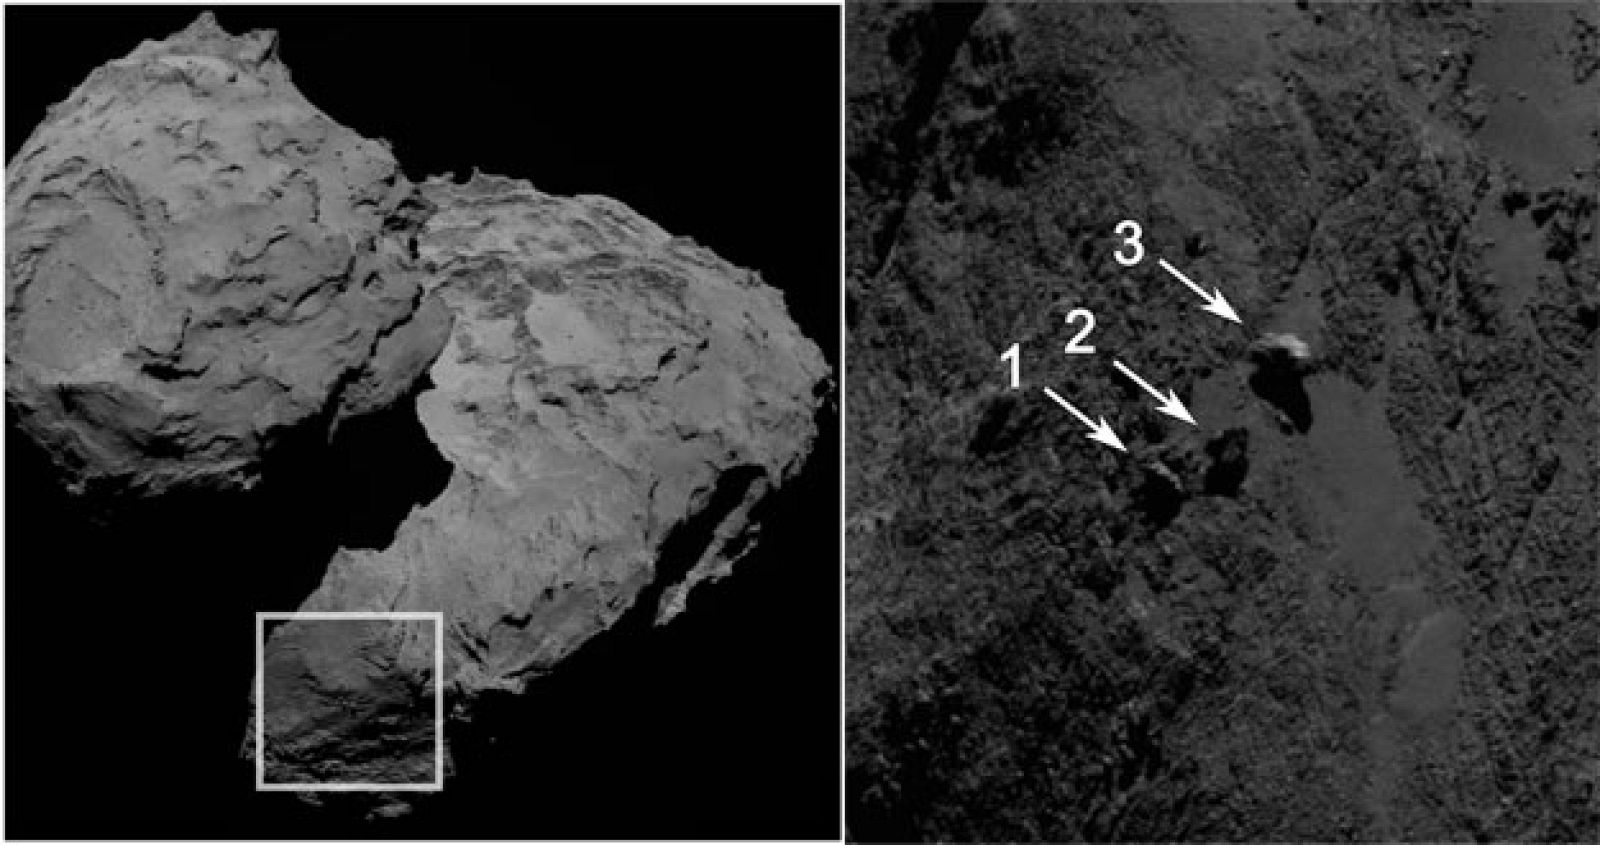 Vista de la zona del cometa donde se han hallado las tres piedras oscilantes y detalles de estas, con su localización.